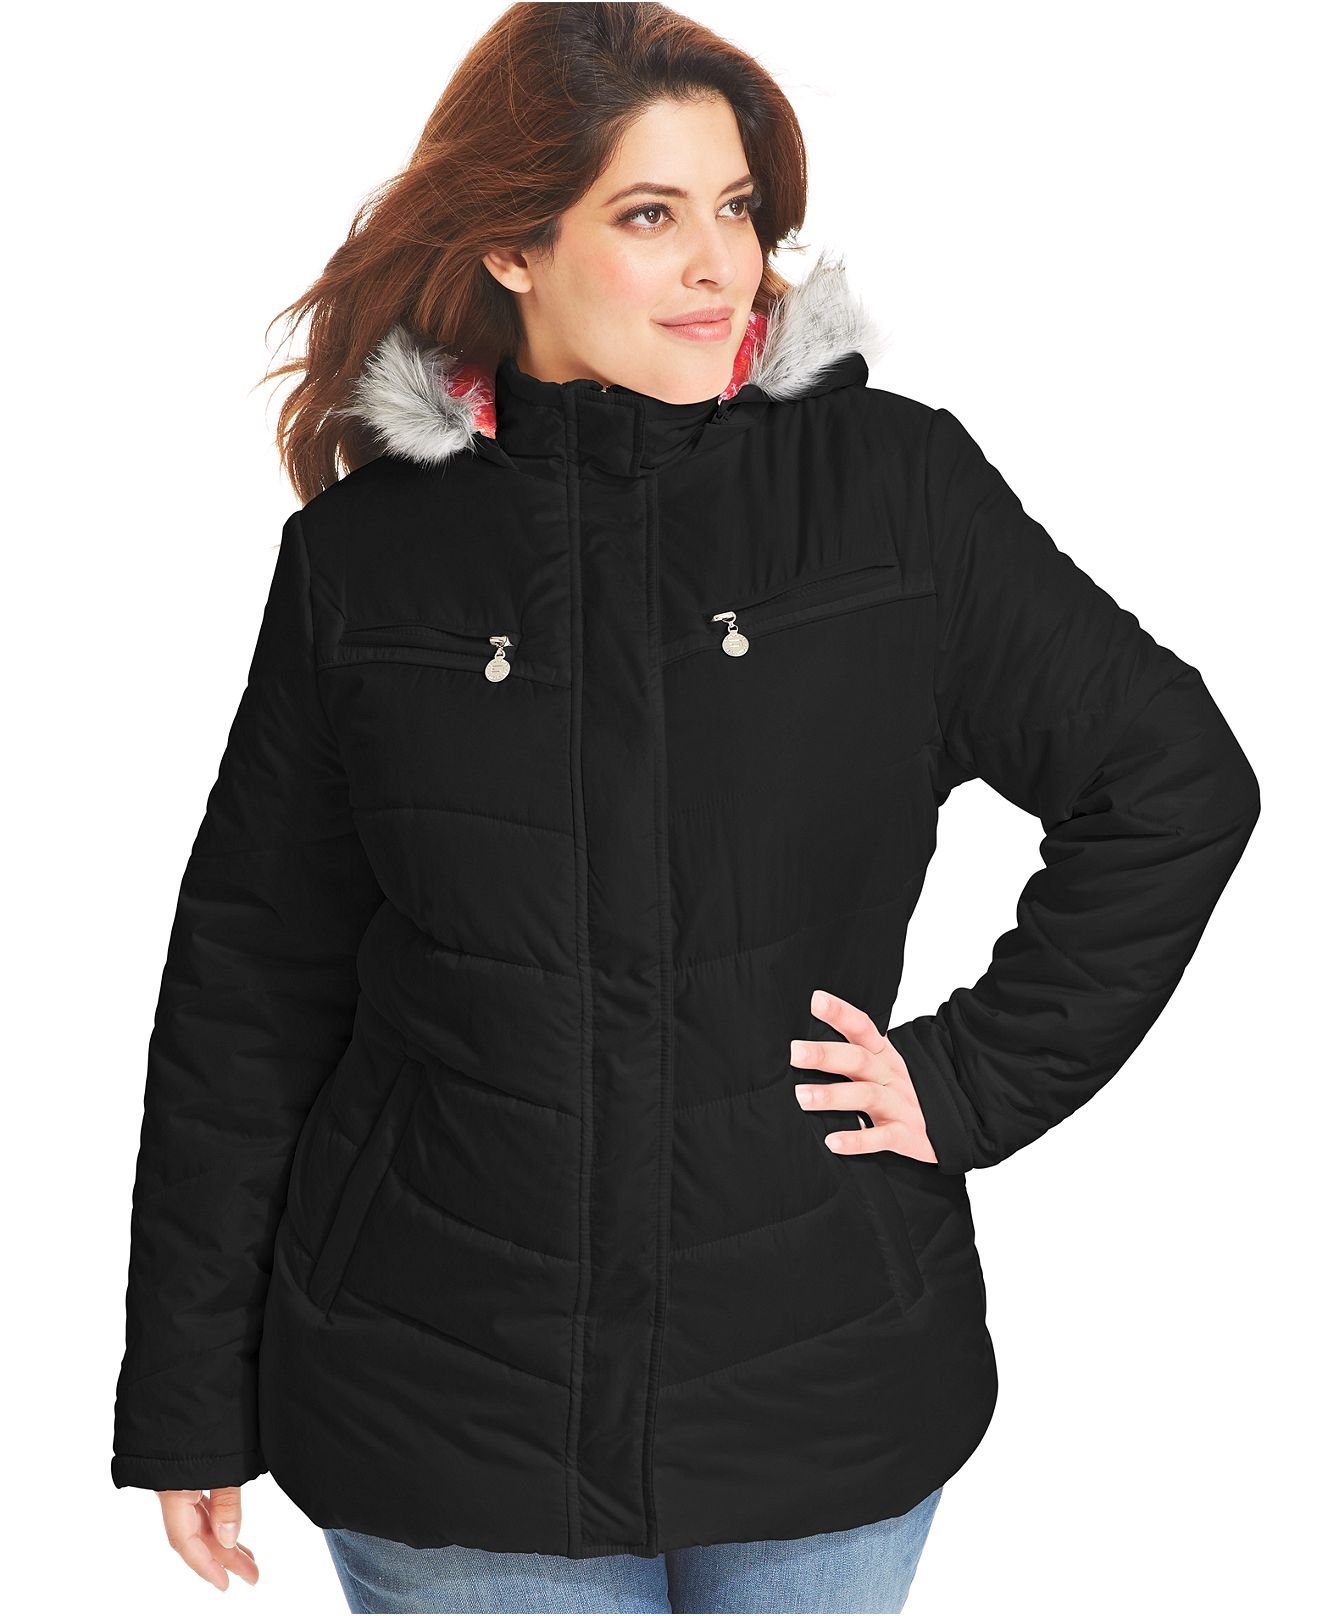 Осенние куртки больших размеров купить. Mishel утепленная куртка 56 размер. Куртки для полных женщин зимние. Зимняя куртка женская для полных. Куртка женская зимняя для полных женщин.